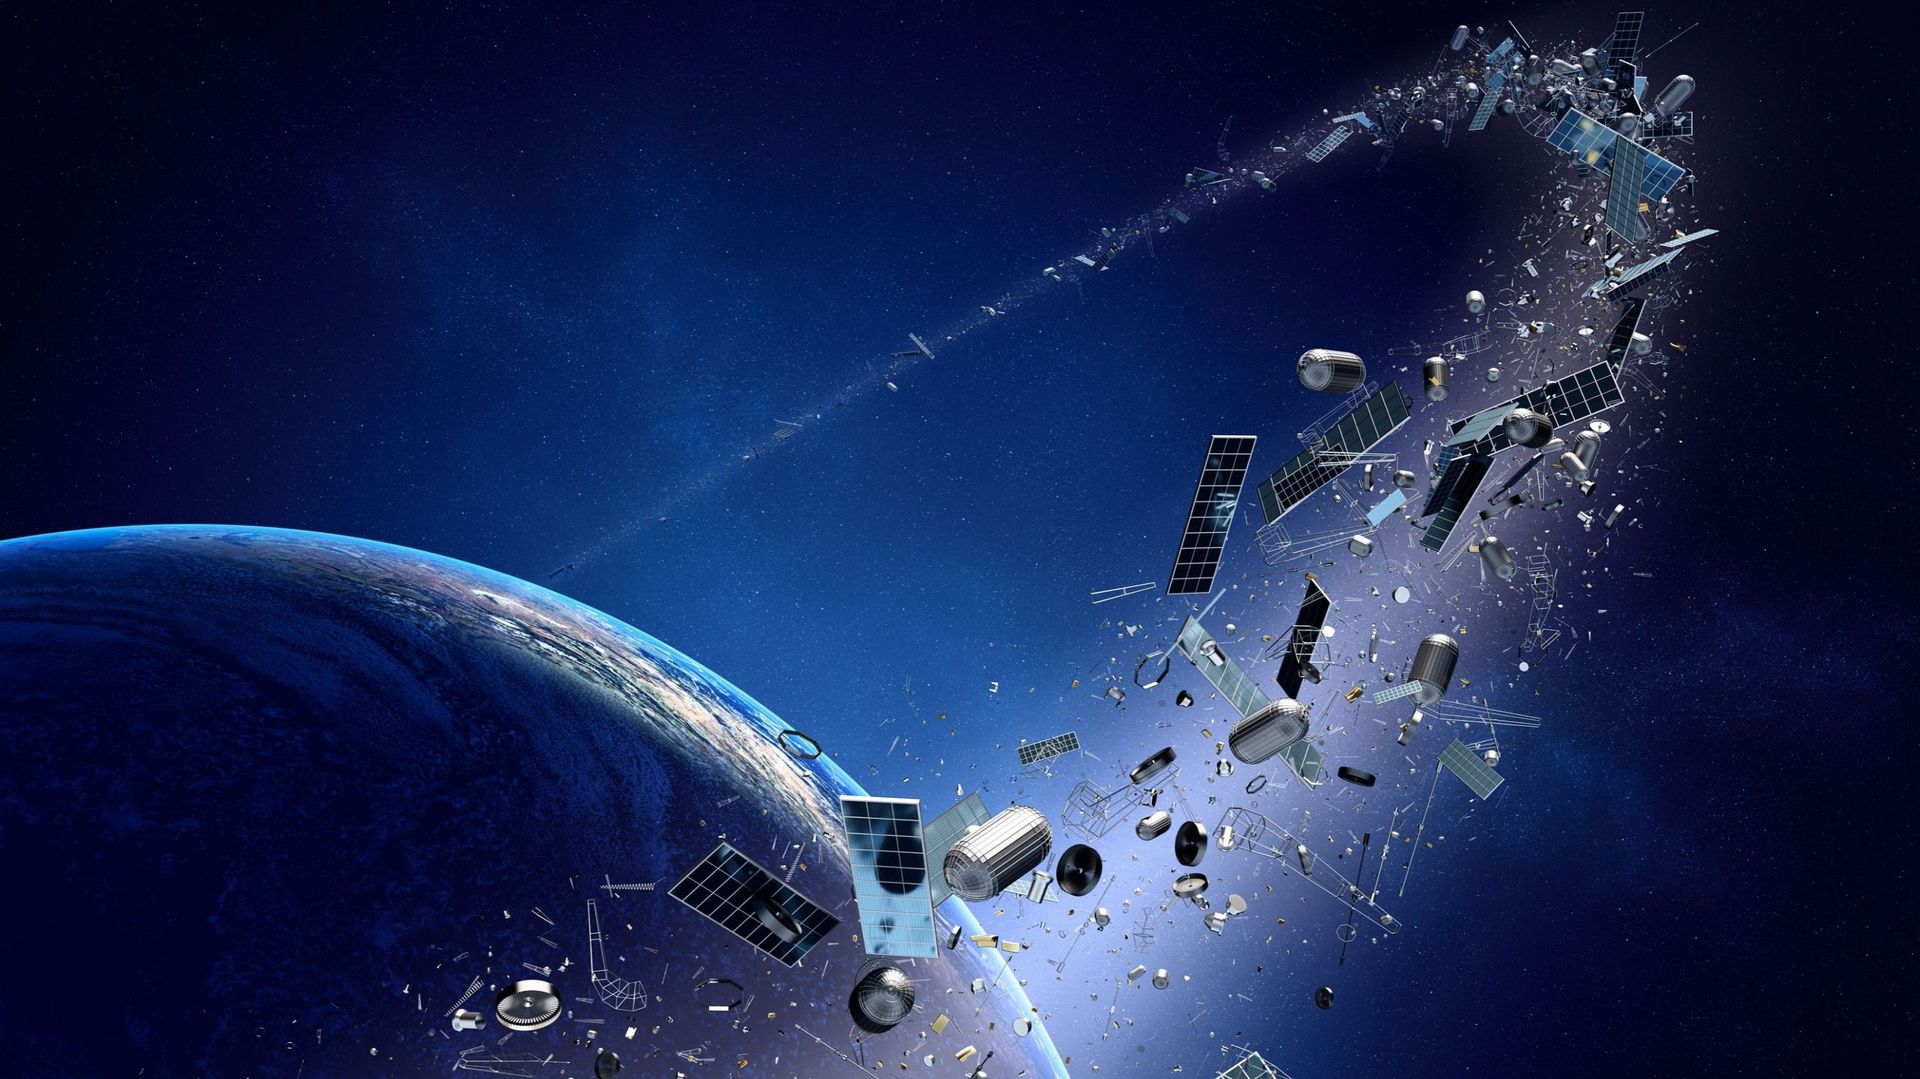 Y aura-t-il bientôt des anneaux autour de la Terre à cause des débris spatiaux ?